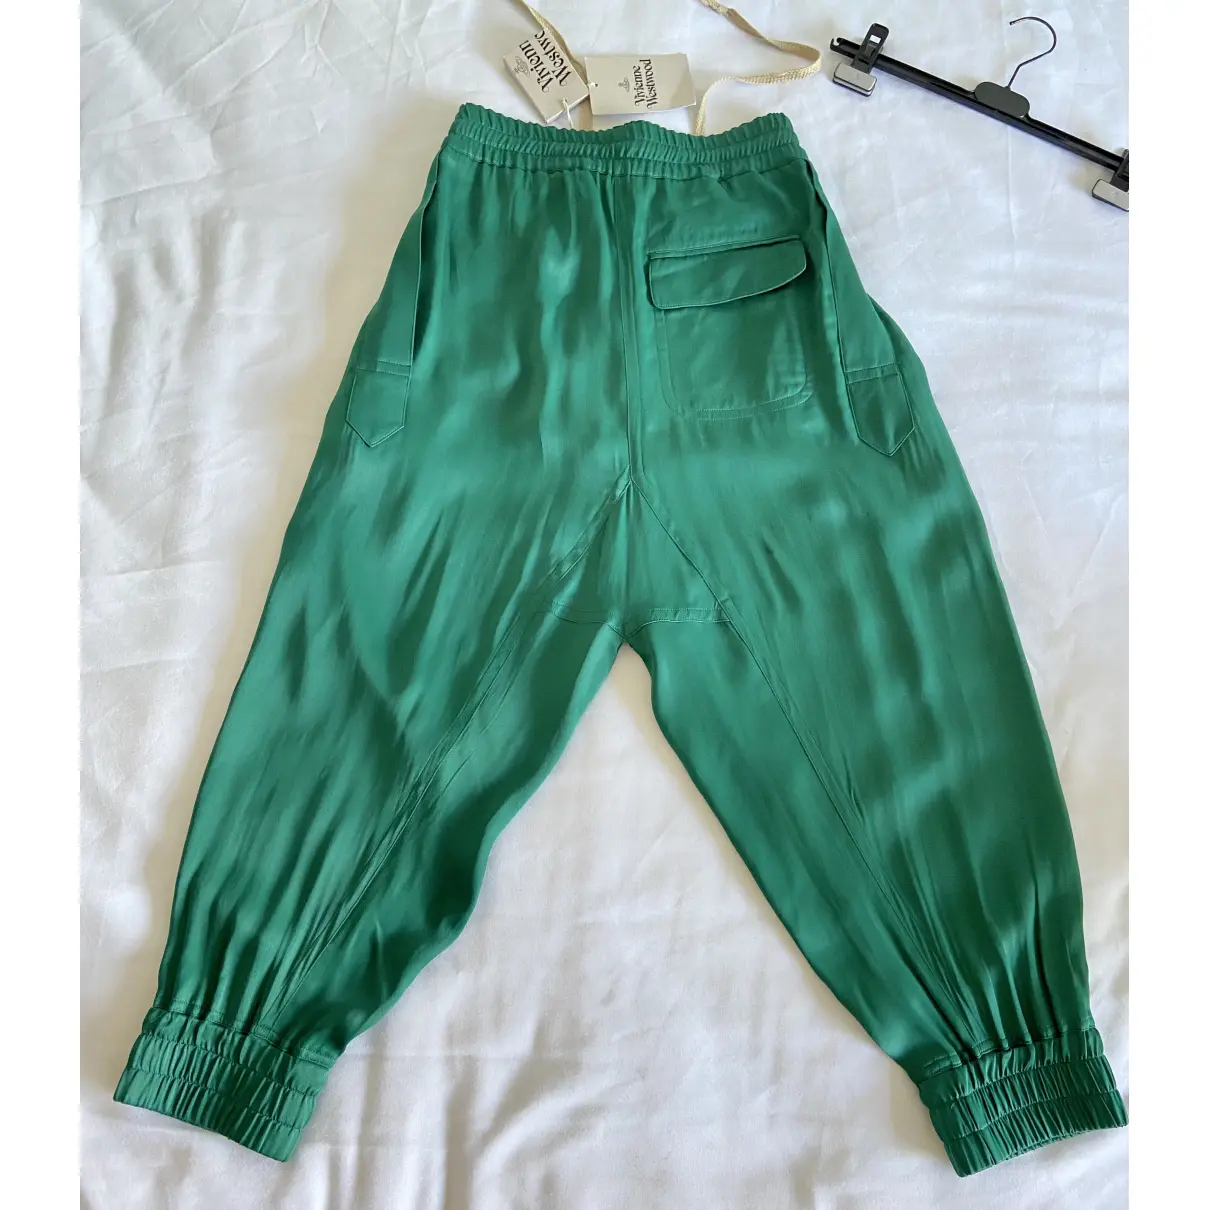 Buy Vivienne Westwood Trousers online